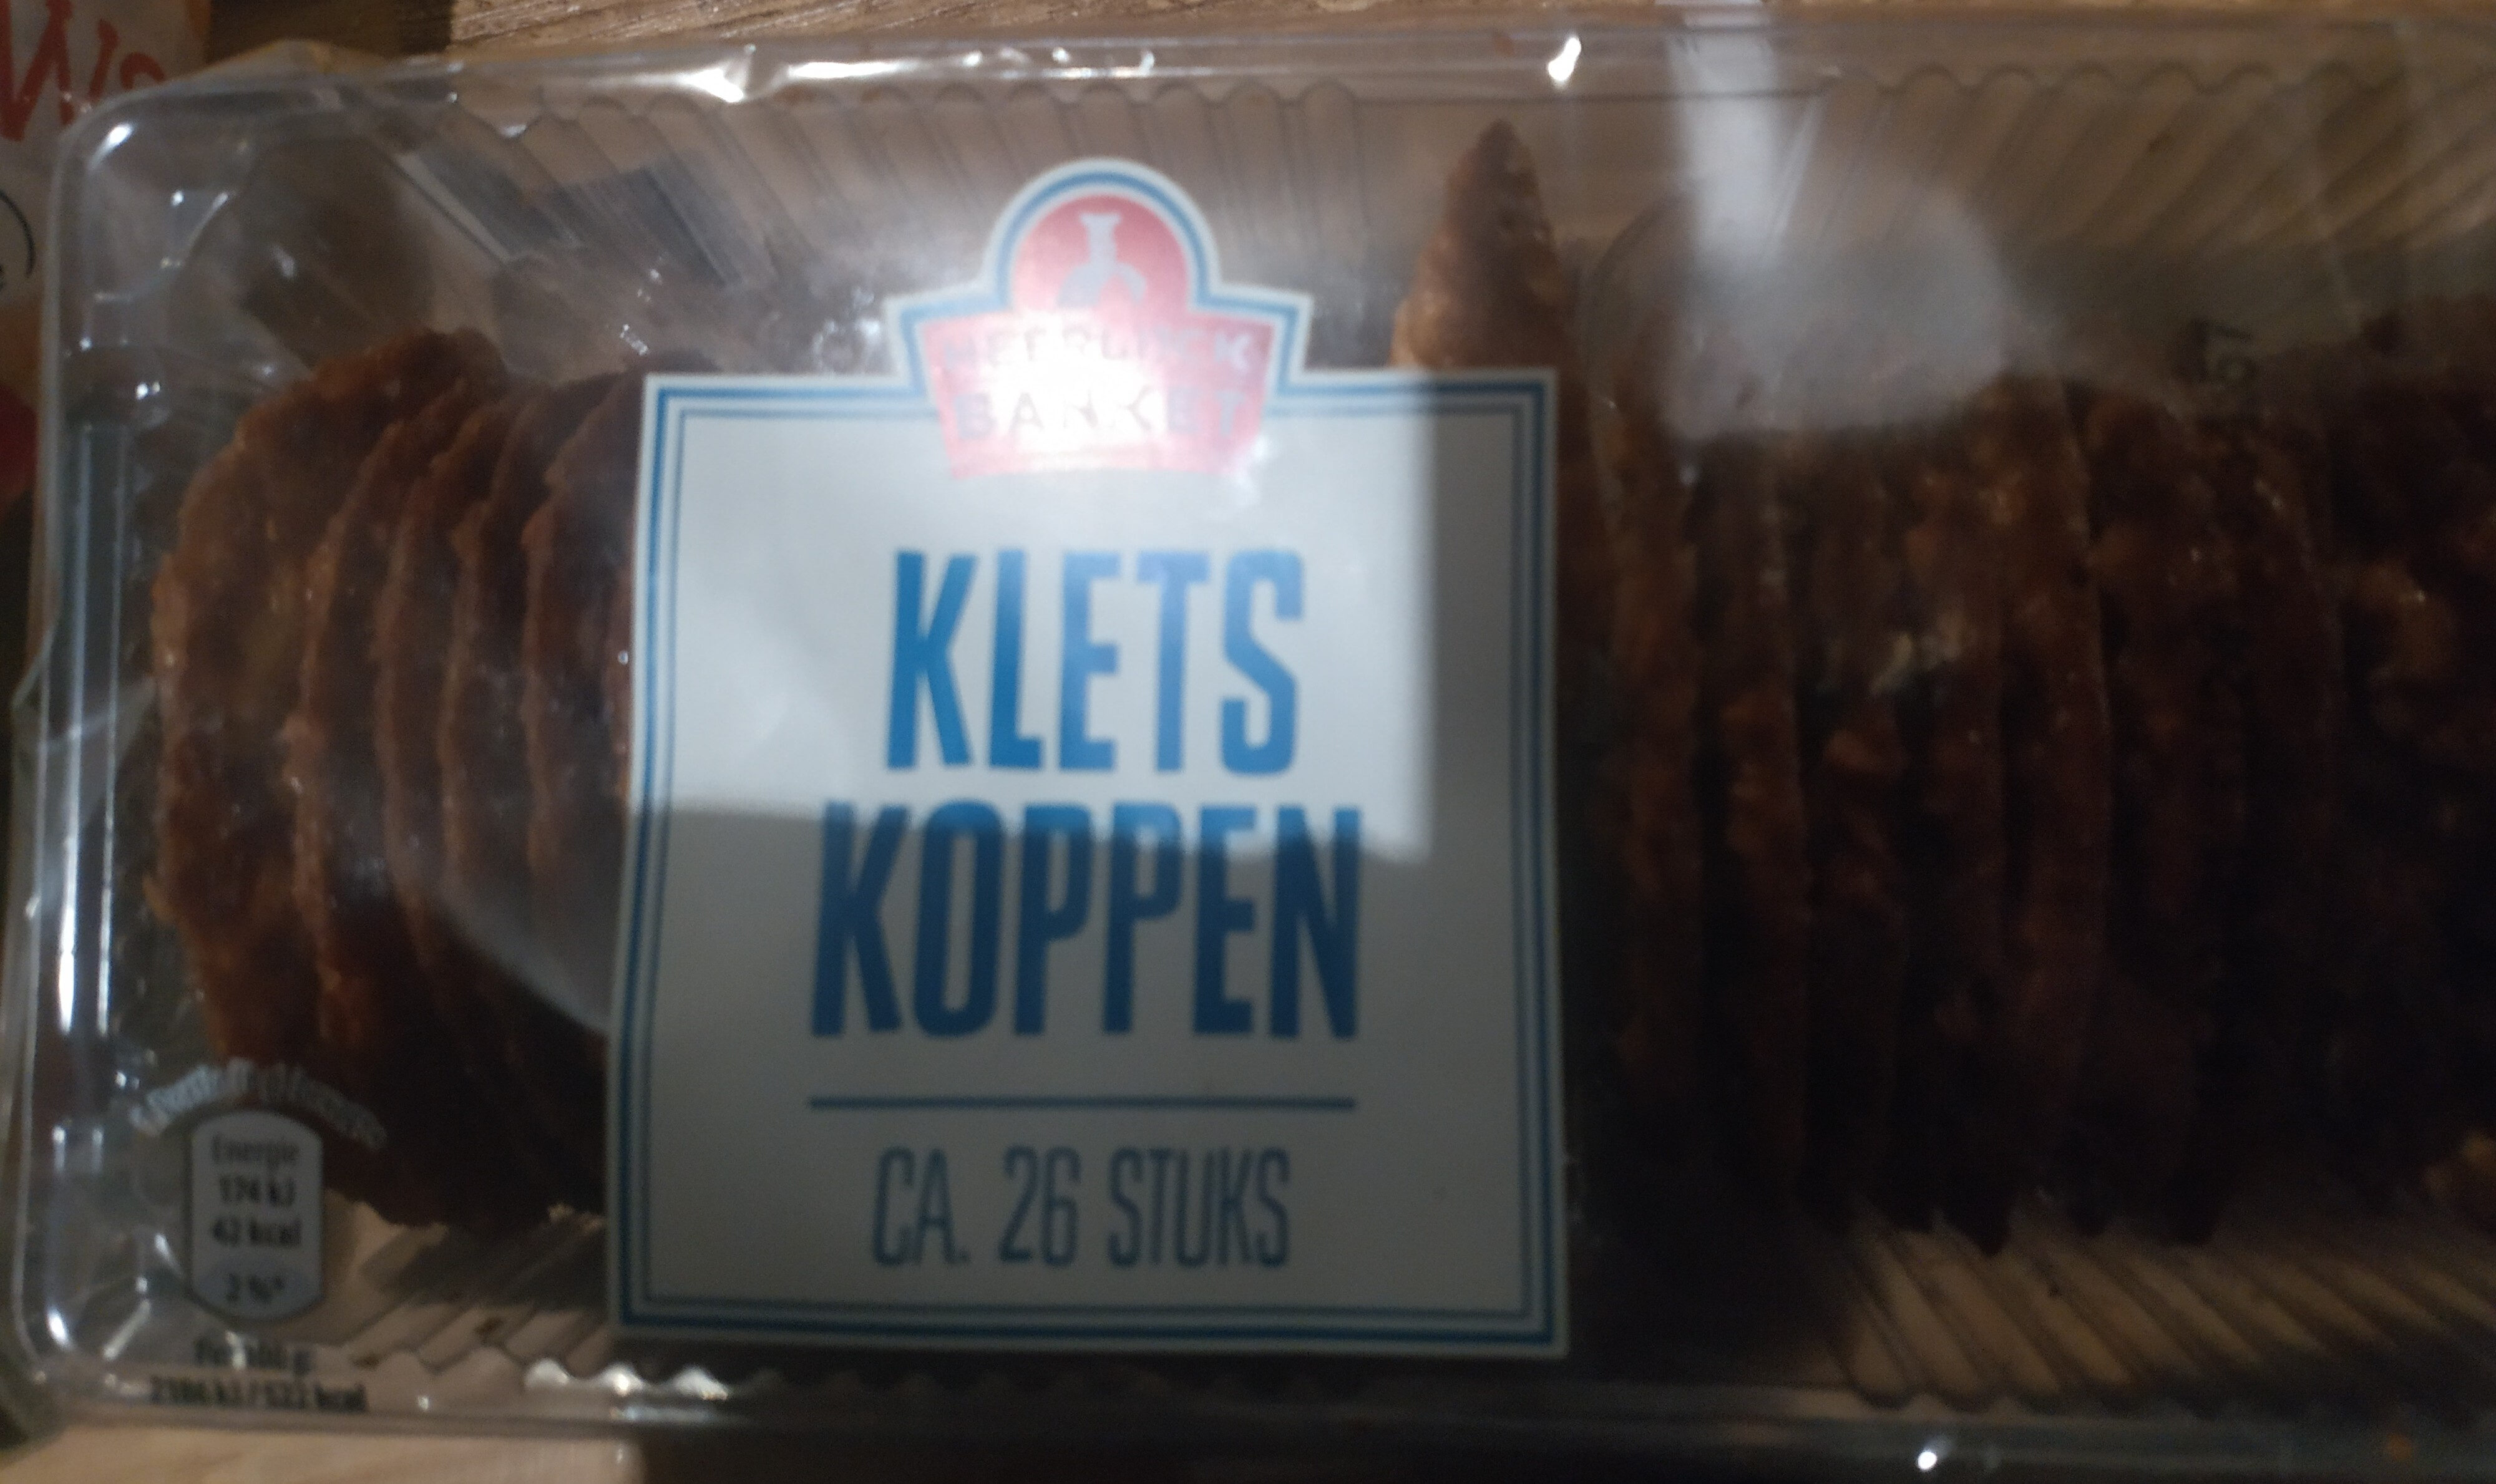 Kletskoppen - Product - nl